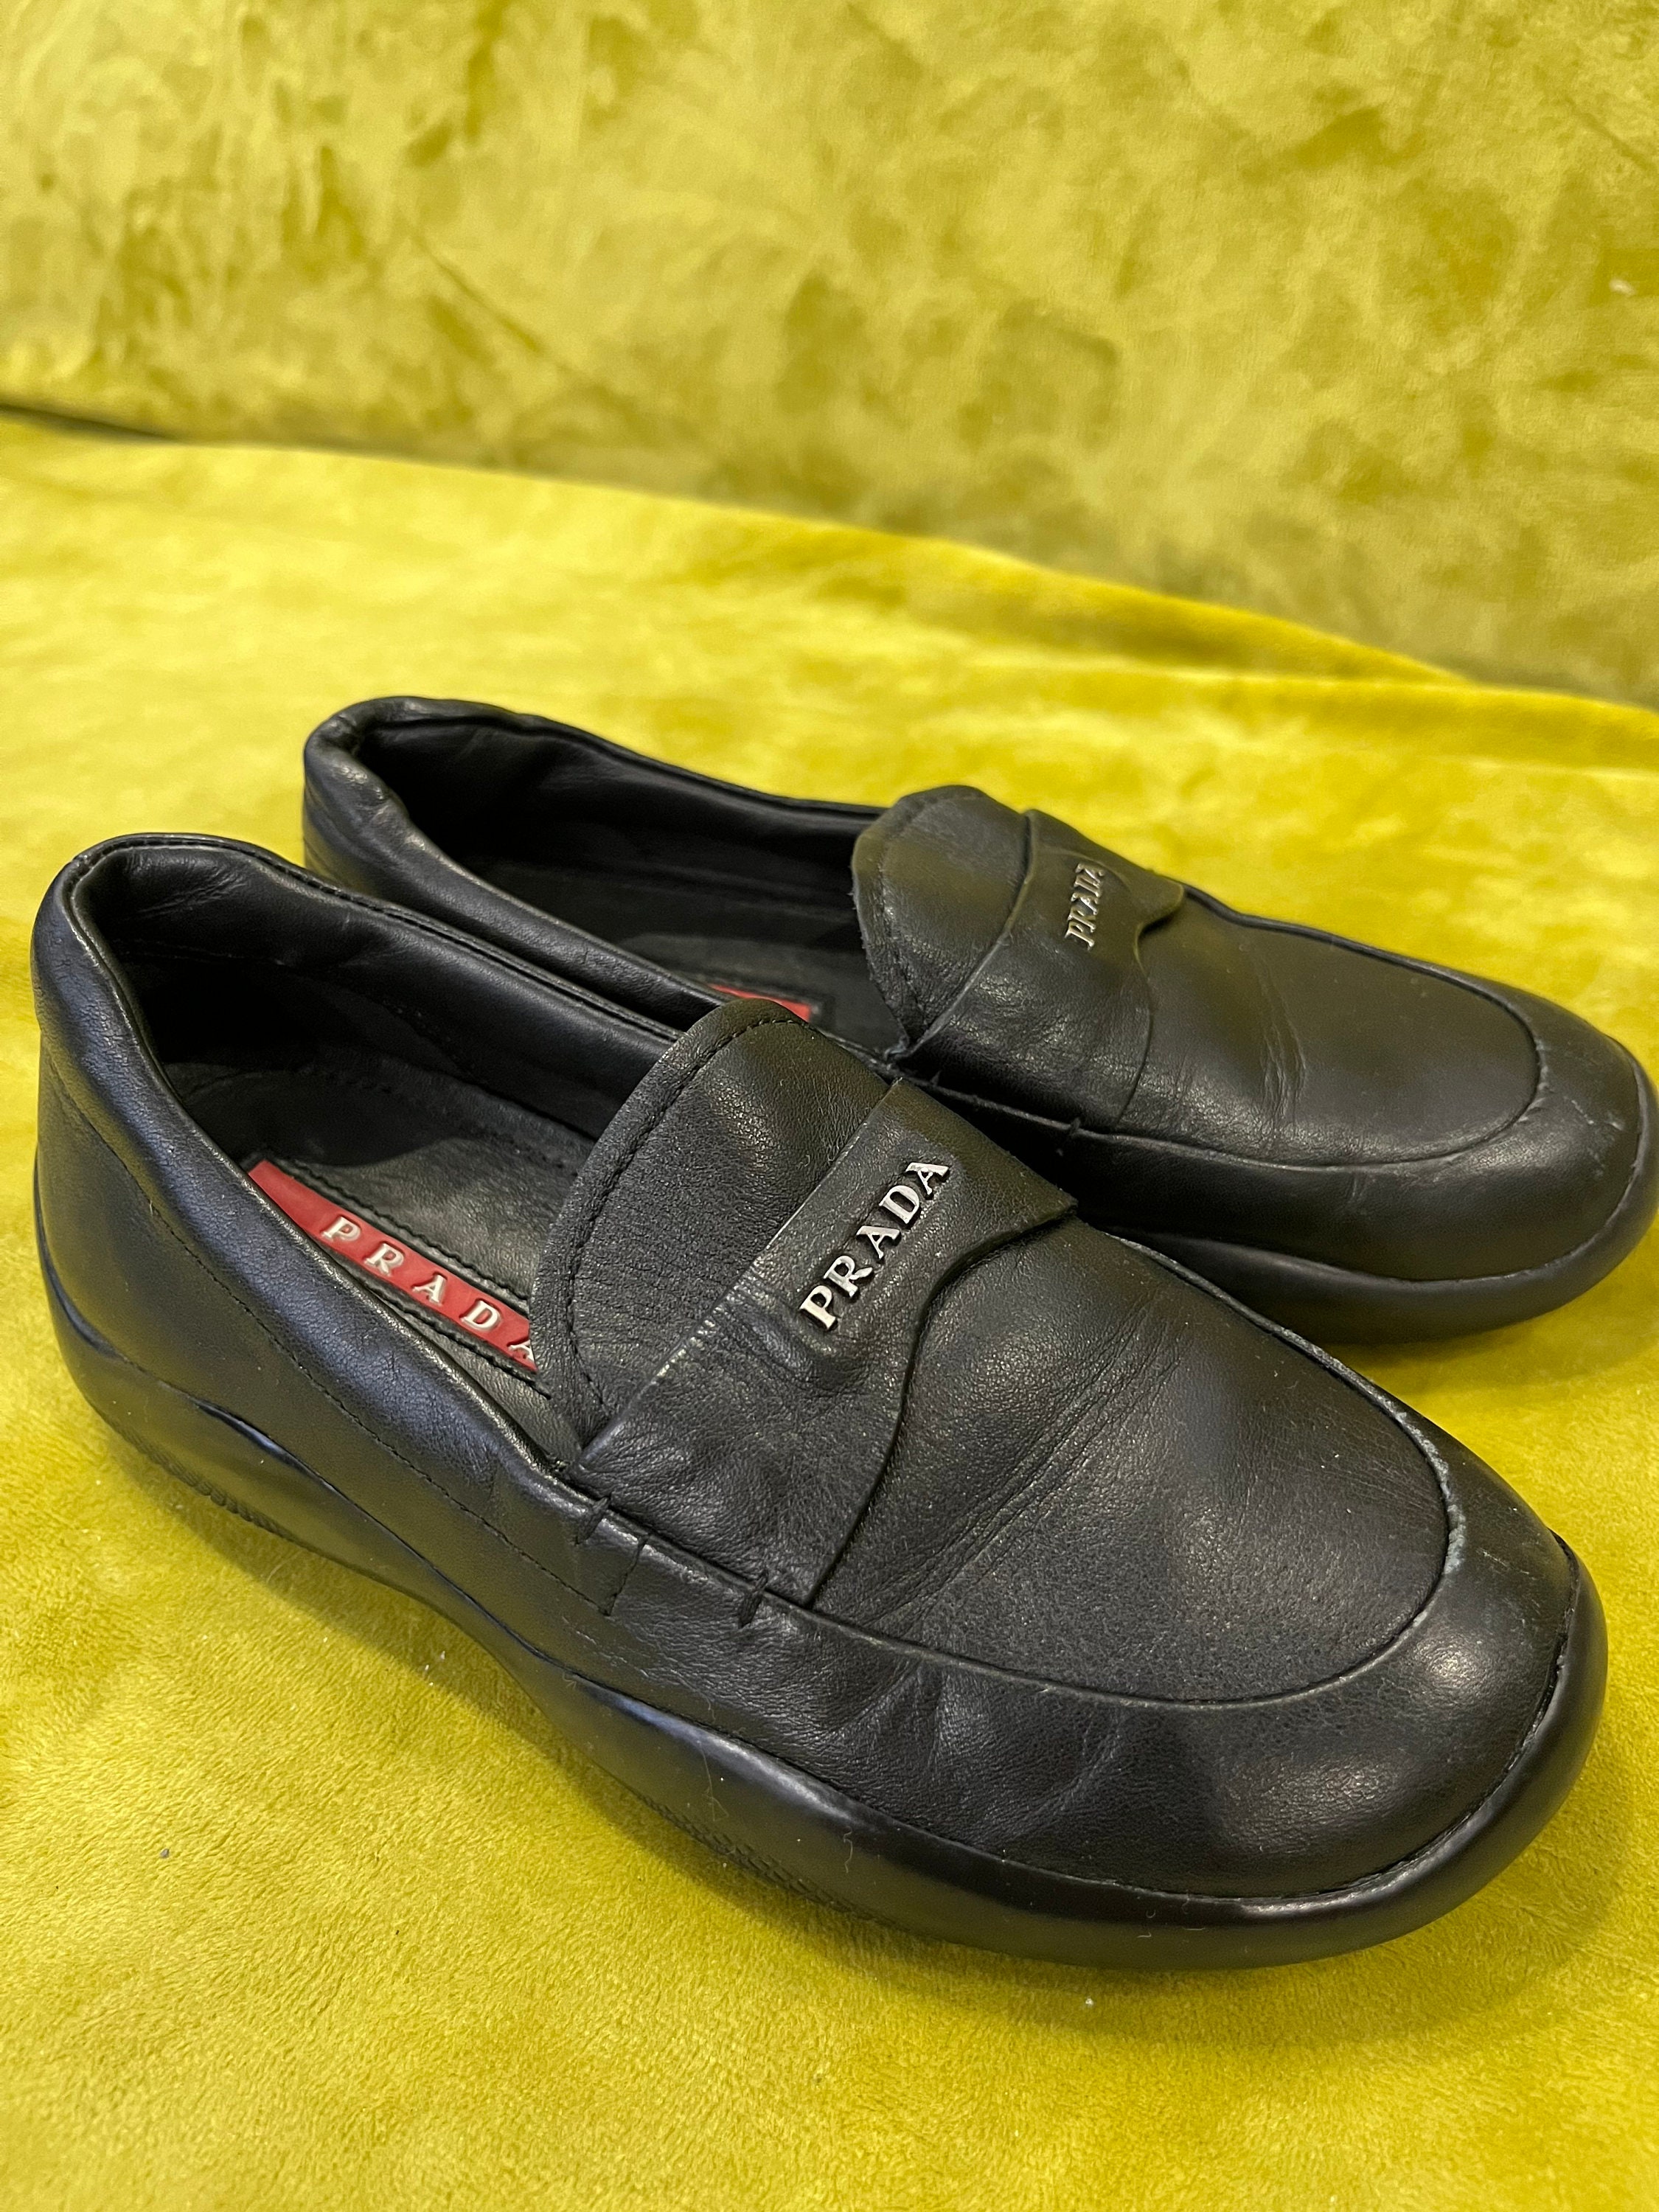 Prada vintage Black Leather Kid’s Loafers Boy’s Shoes Taille 29 Chaussures Chaussures garçon Mocassins et chaussures sans lacets 